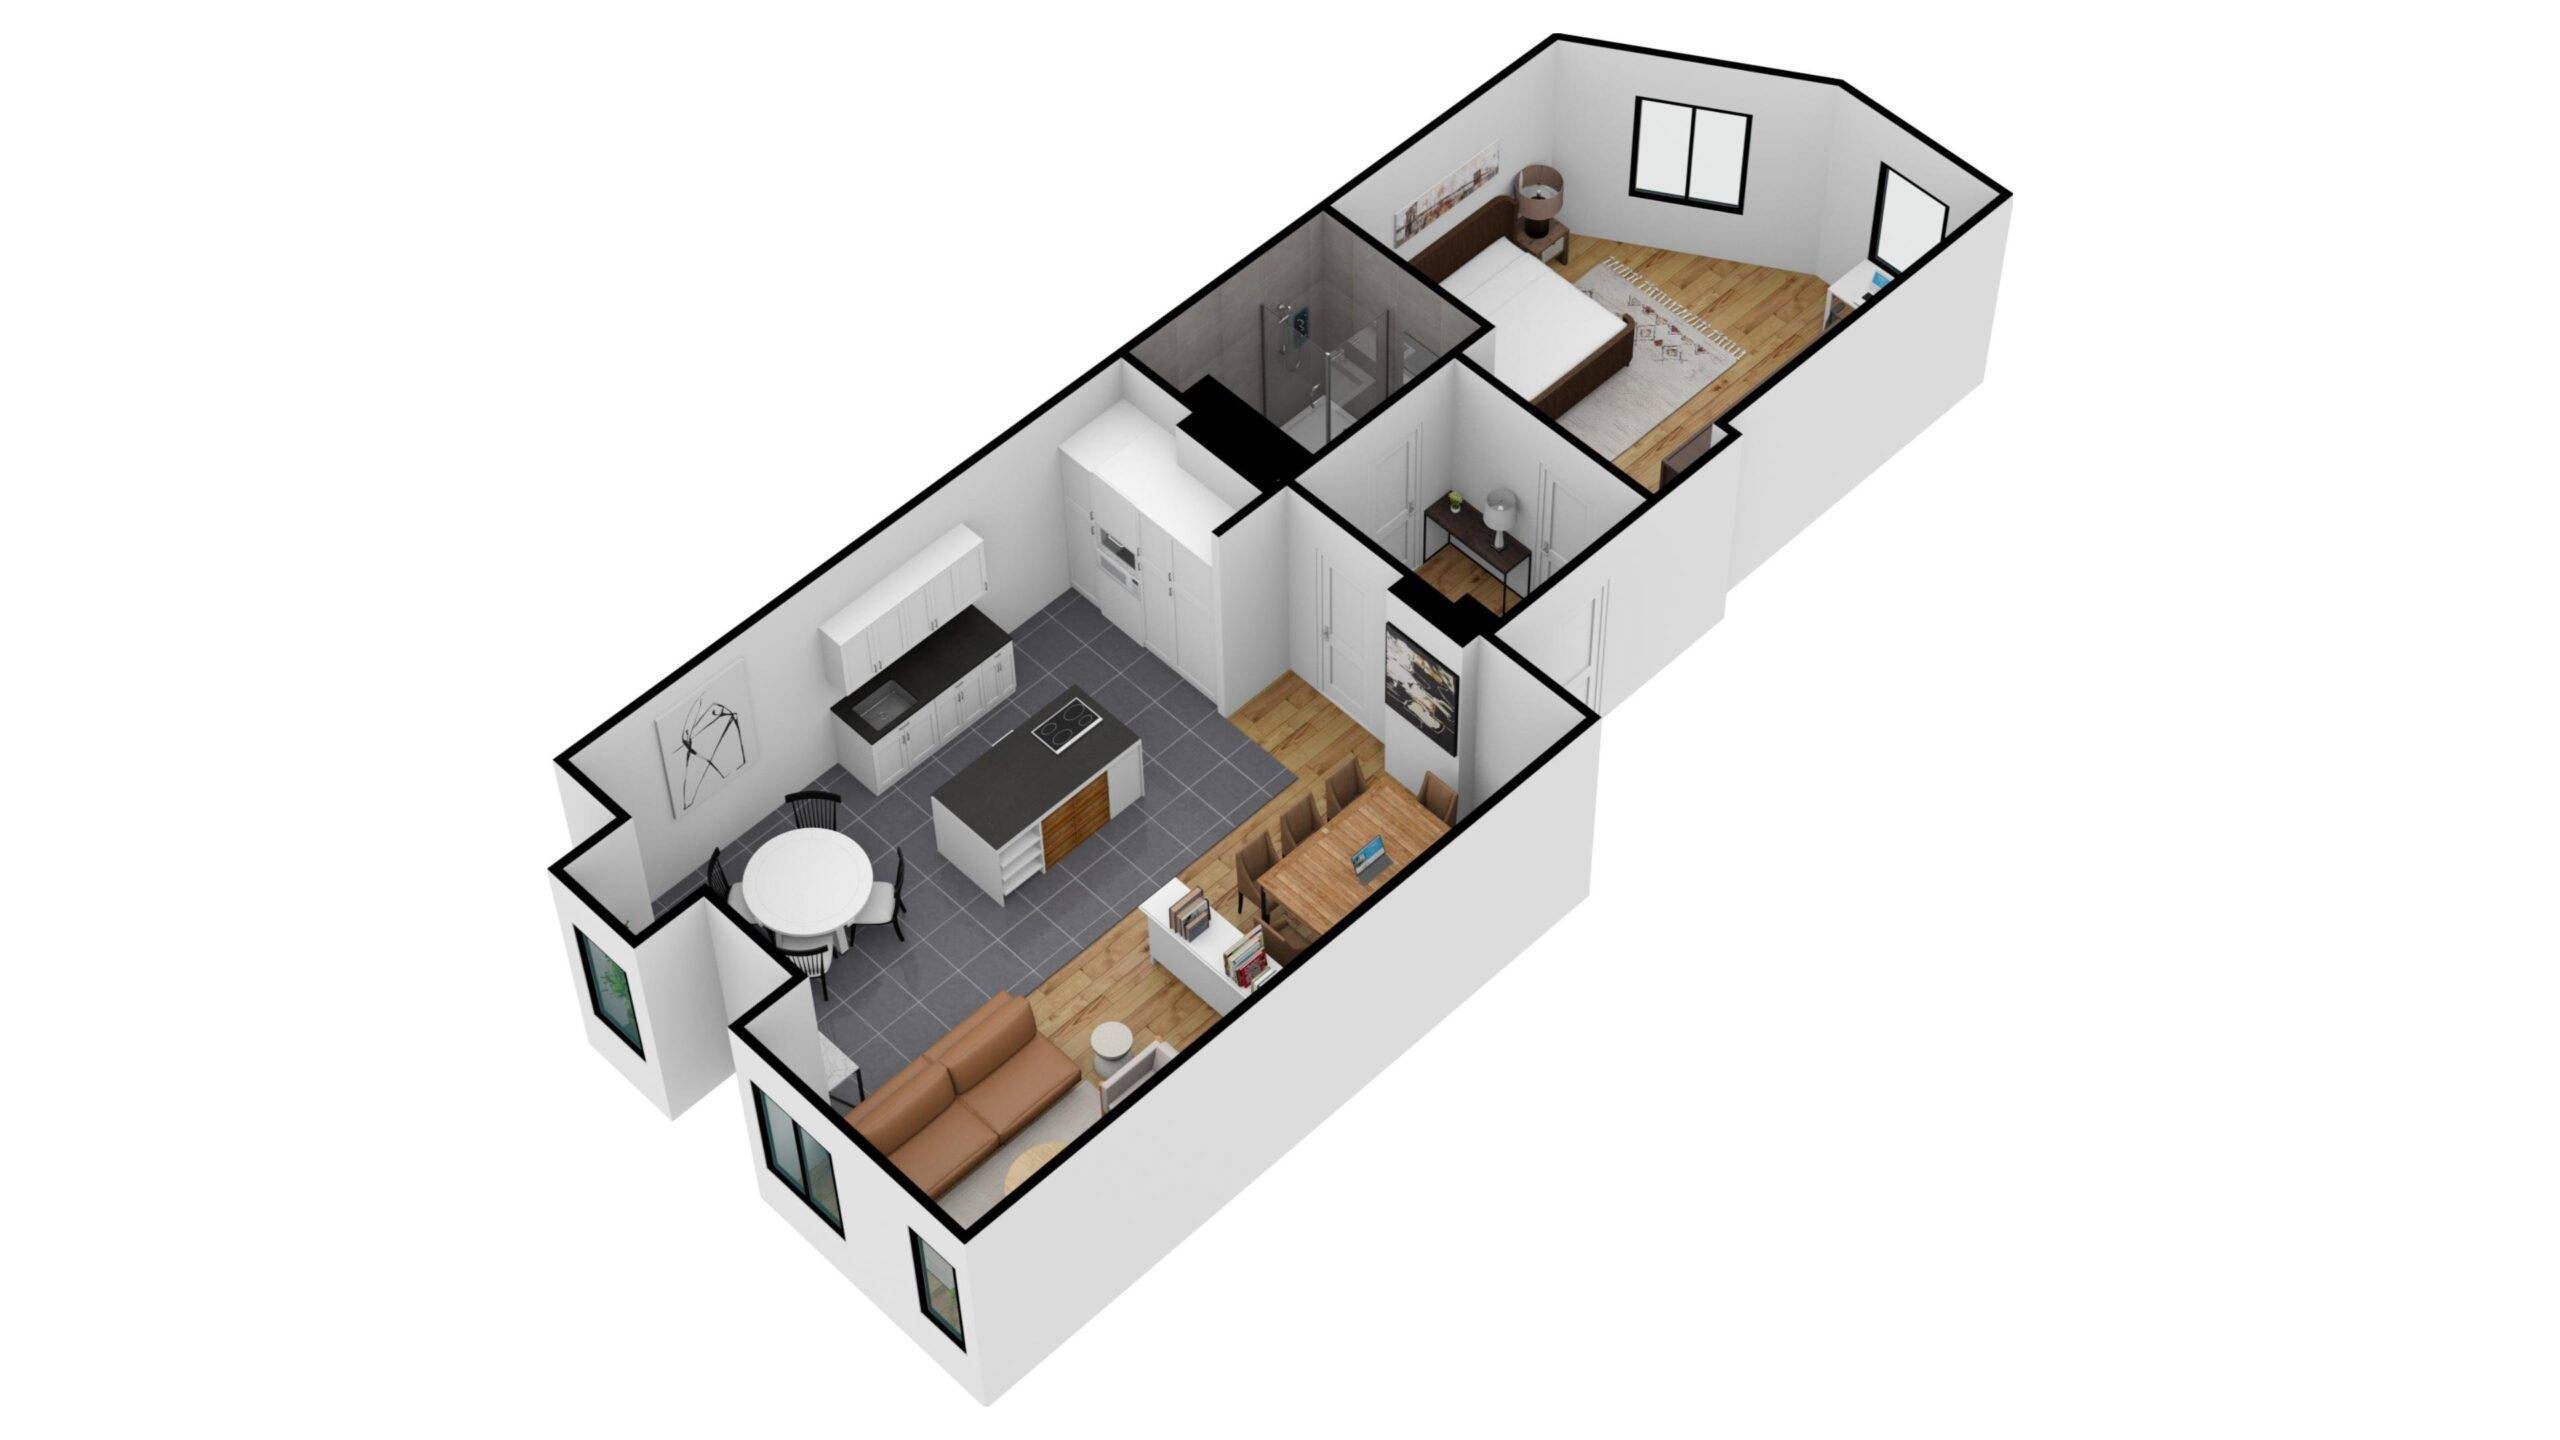 3D Floor Plan Rendering Services